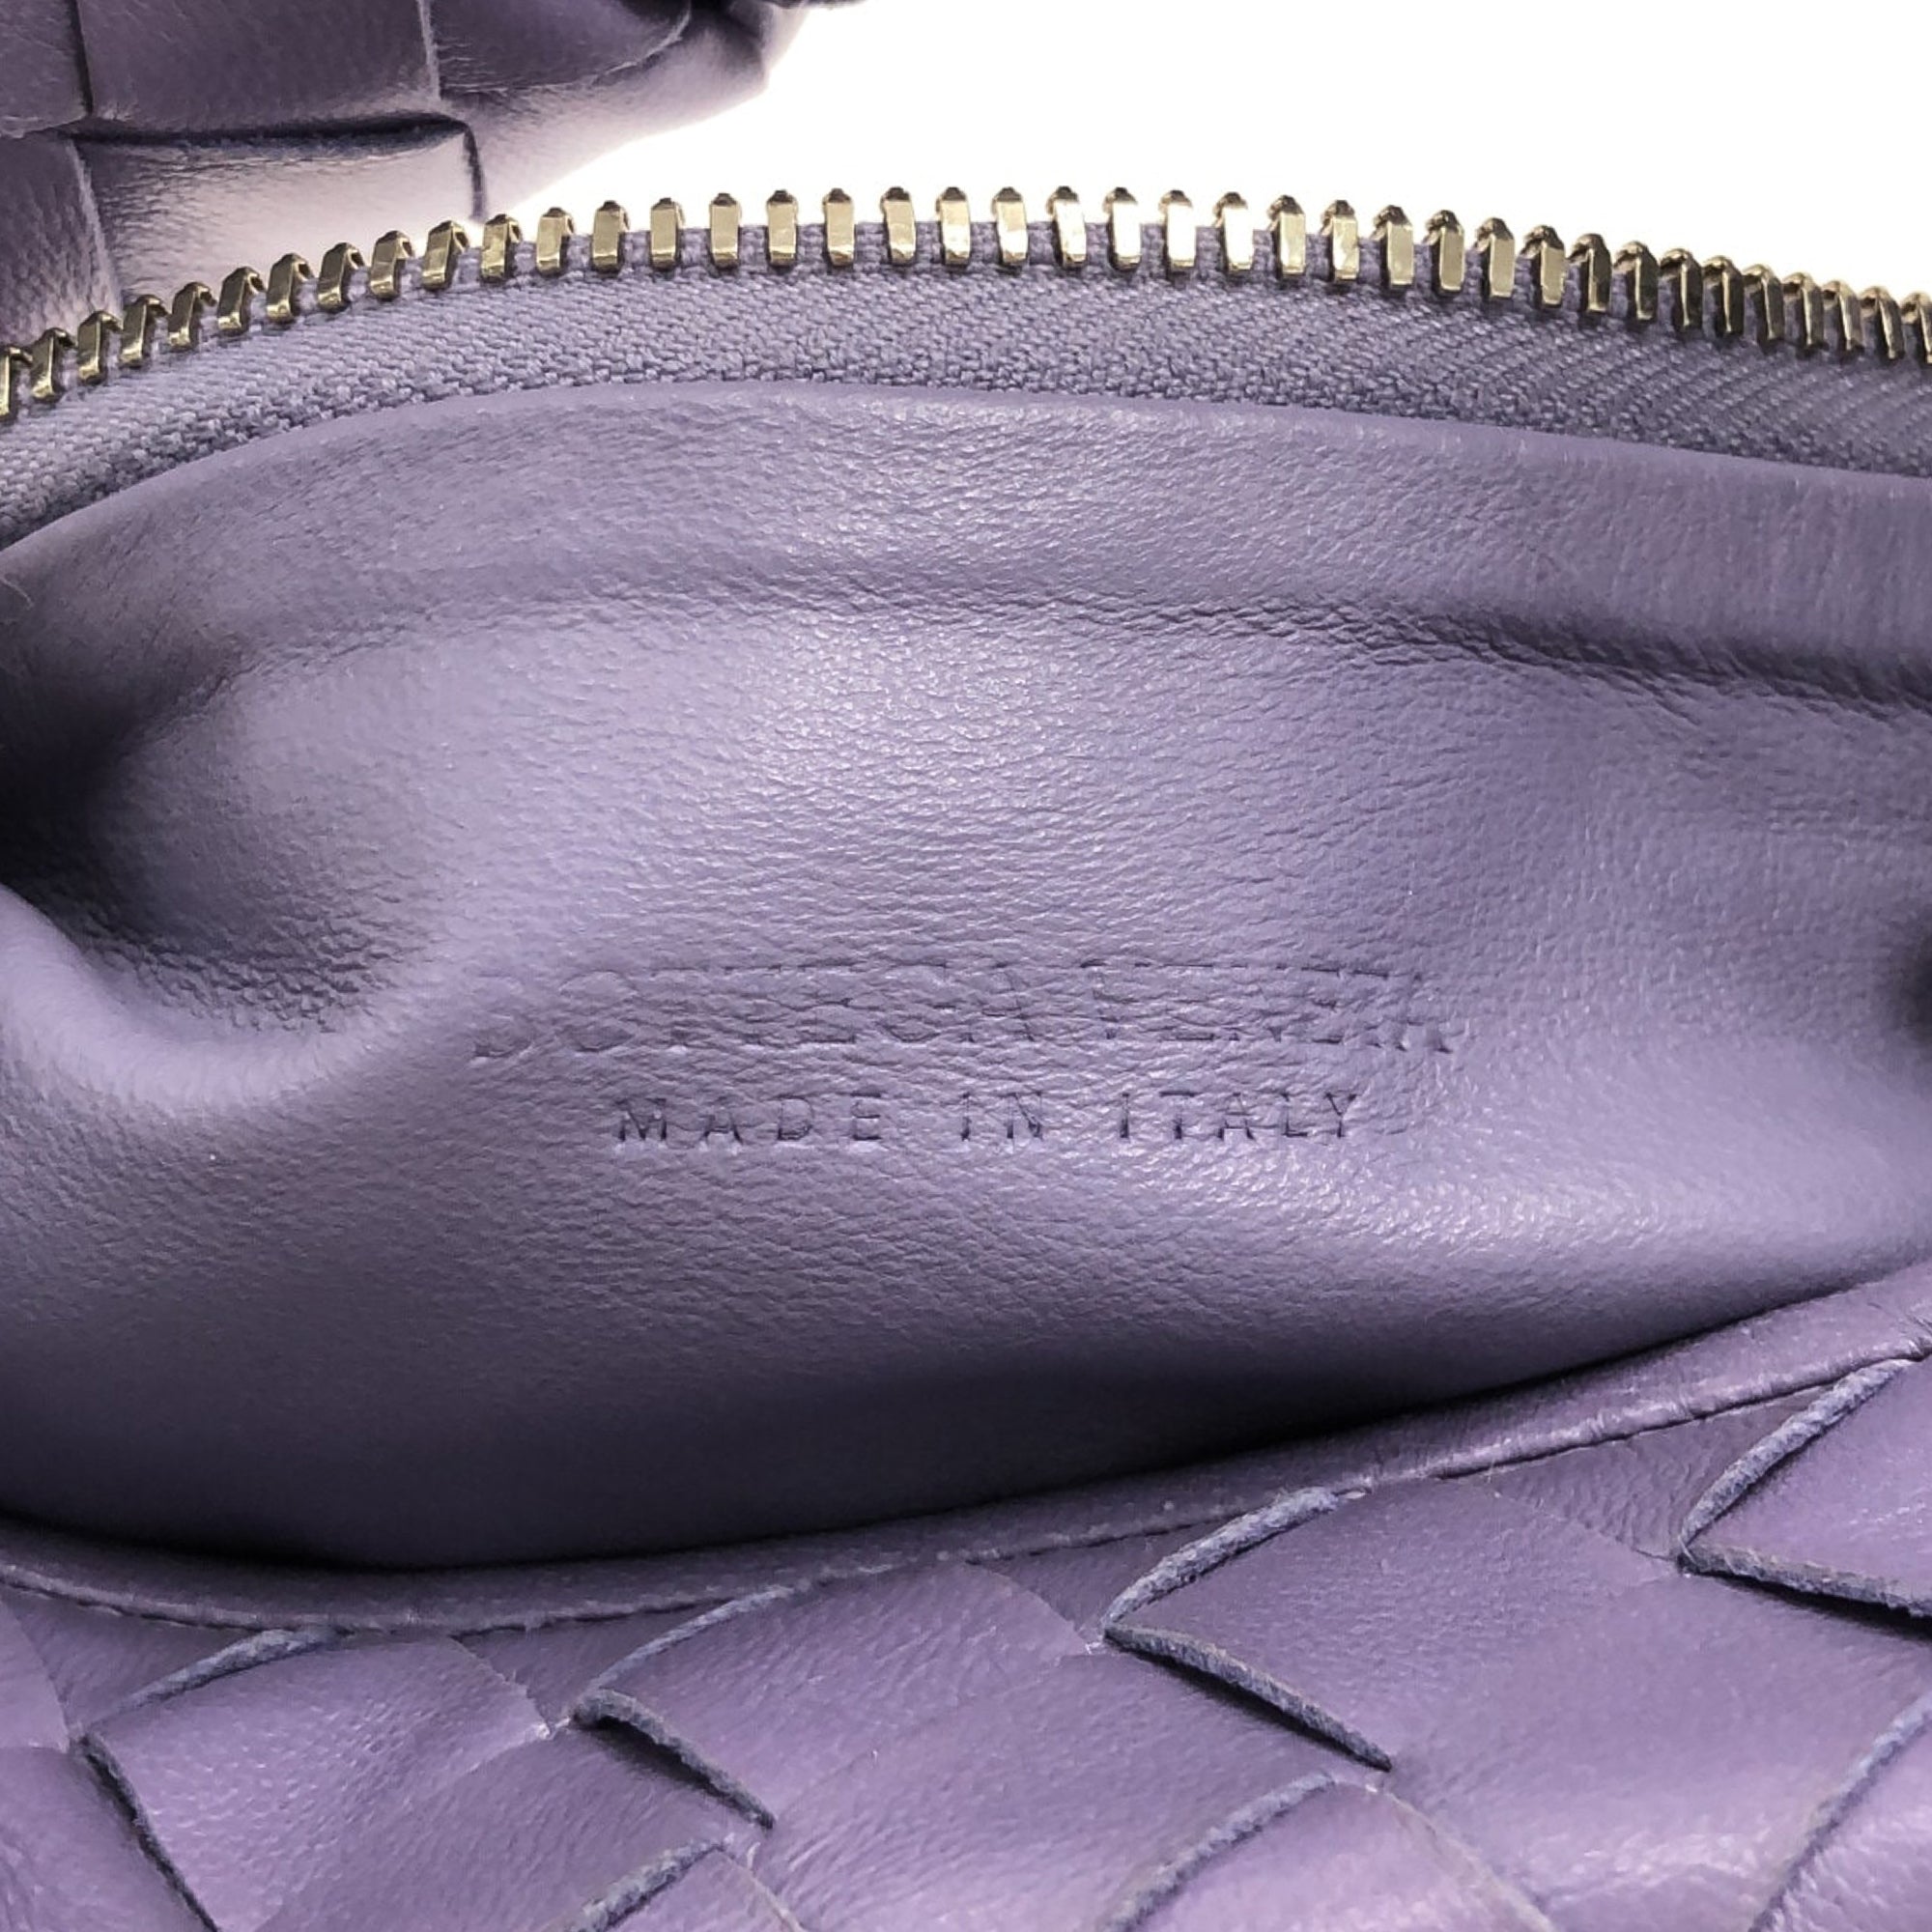 Bottega Veneta Medium Hobo Intrecciato Shoulder Bag in Lavender